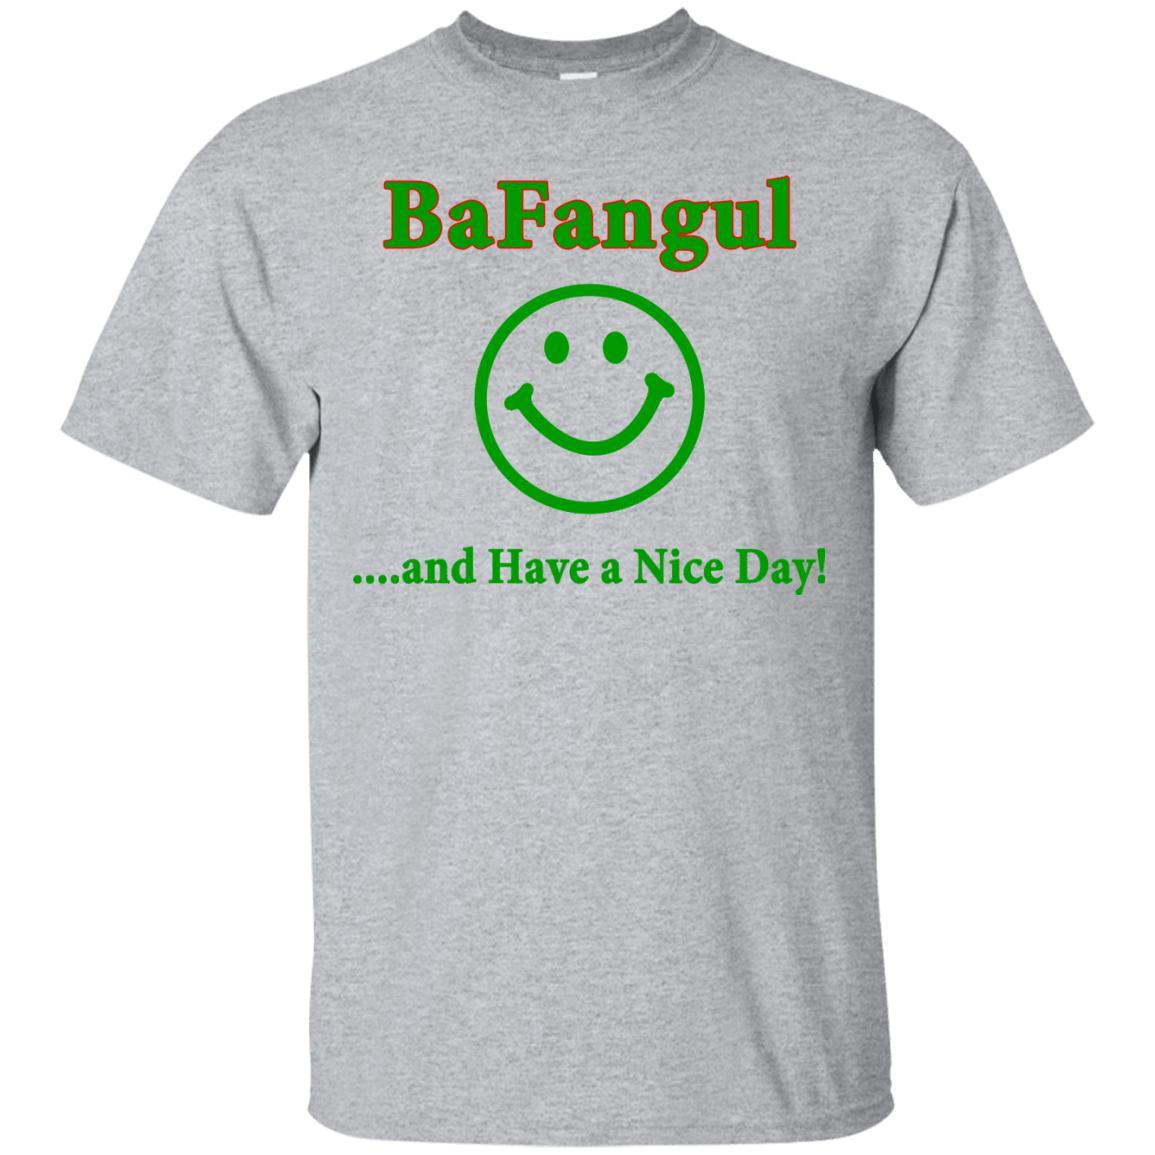 Bafangul Shirt